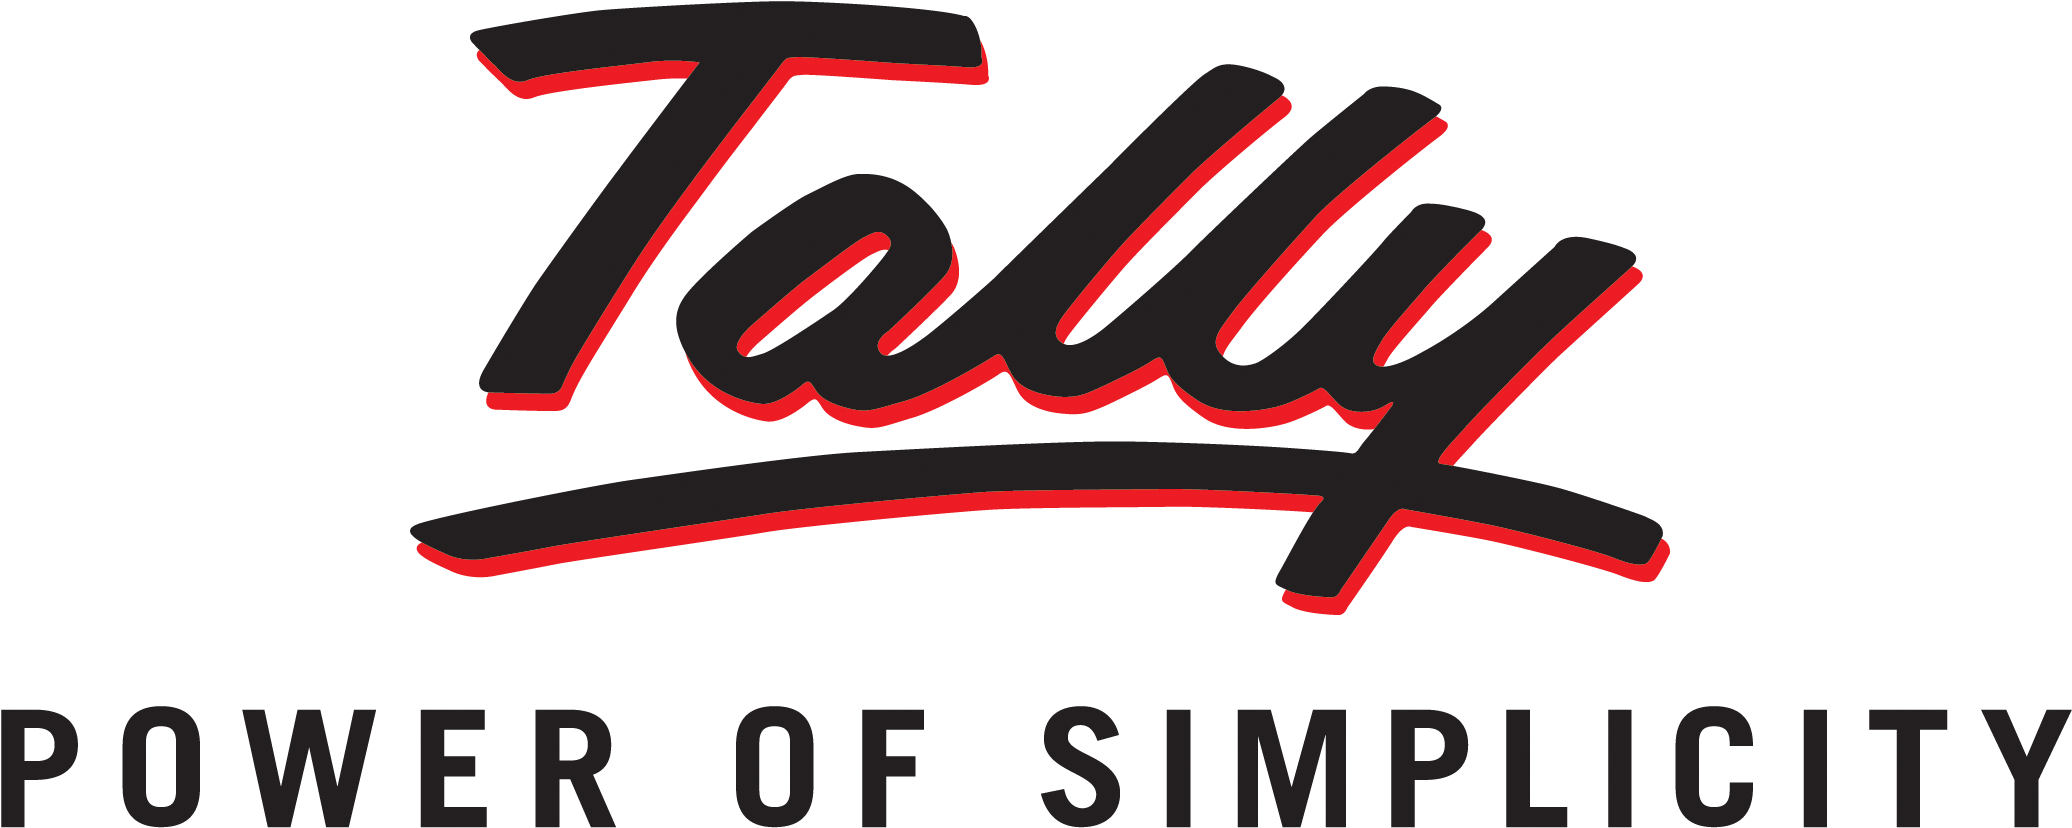 tally logo